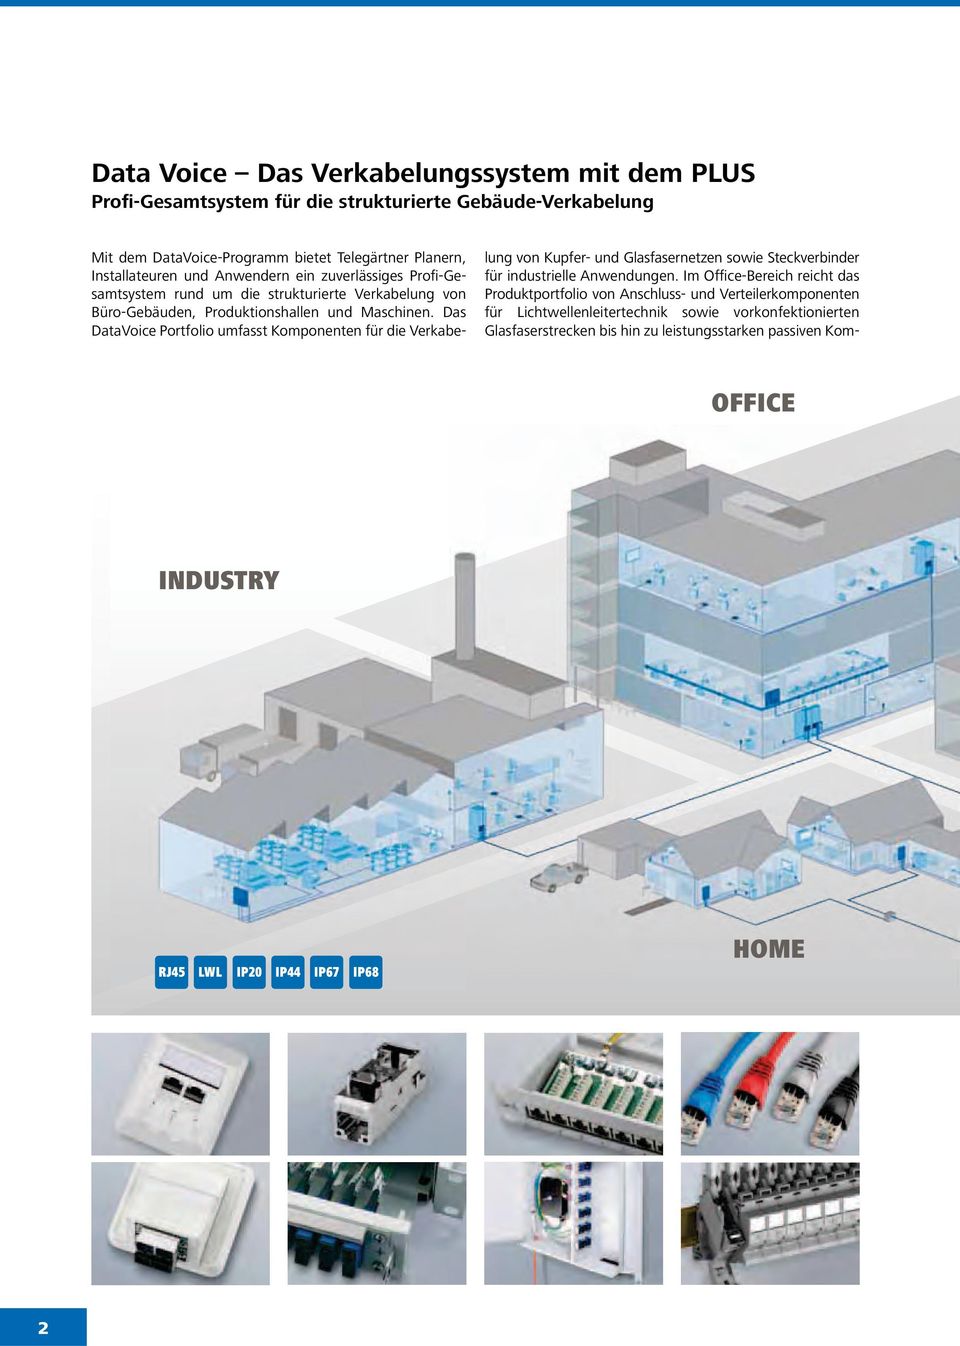 Das DataVoice Portfolio umfasst Komponenten für die Verkabelung von Kupfer- und Glasfasernetzen sowie Steckverbinder für industrielle Anwendungen.